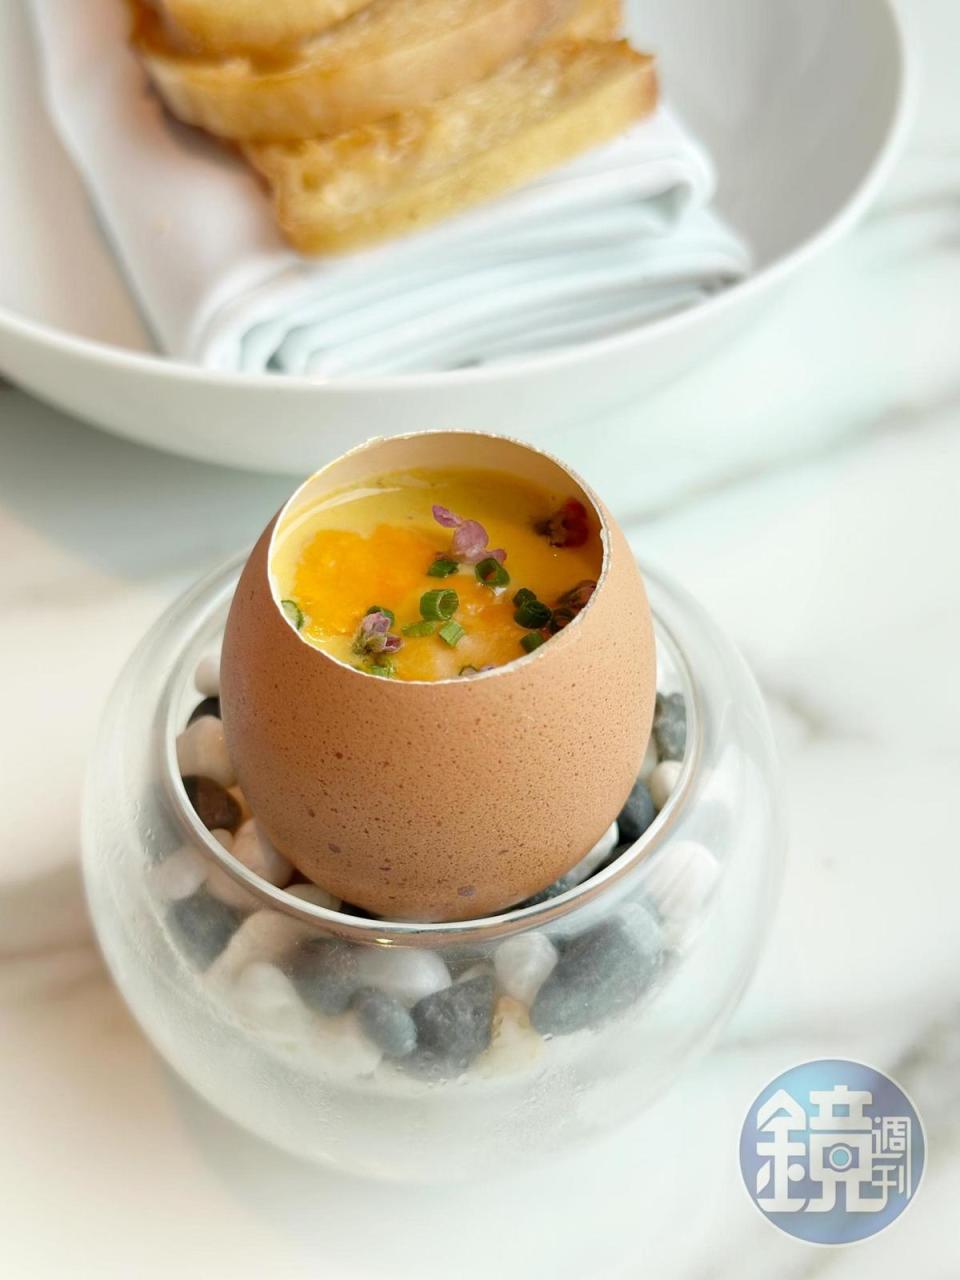 充滿海膽鮮美的豪華燉蛋「北海道馬糞海膽燉蛋」不僅美味顏值也高。